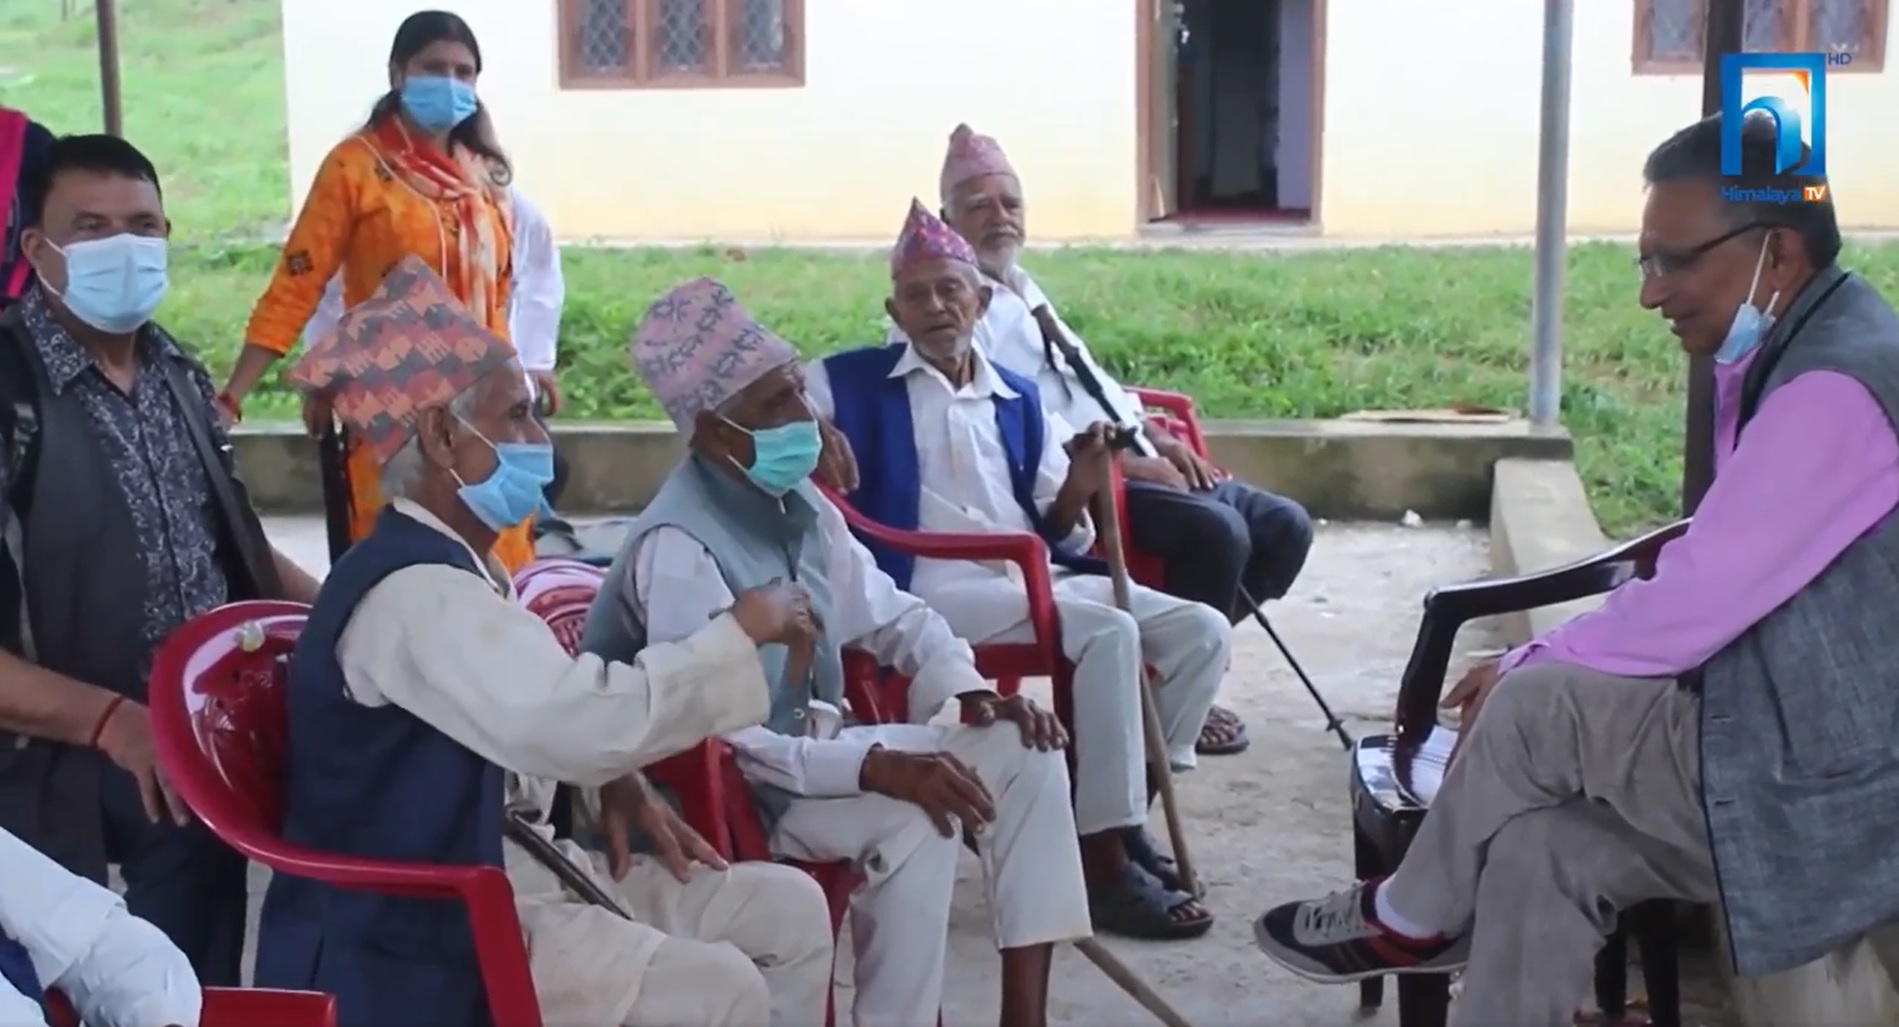 पाल्पाको तानसेनमा न्यानो घर: समय कटाउने ठाउँ पाउँदा वृद्धवृद्धा दङ्ग (भिडियो रिपोर्टसहित)